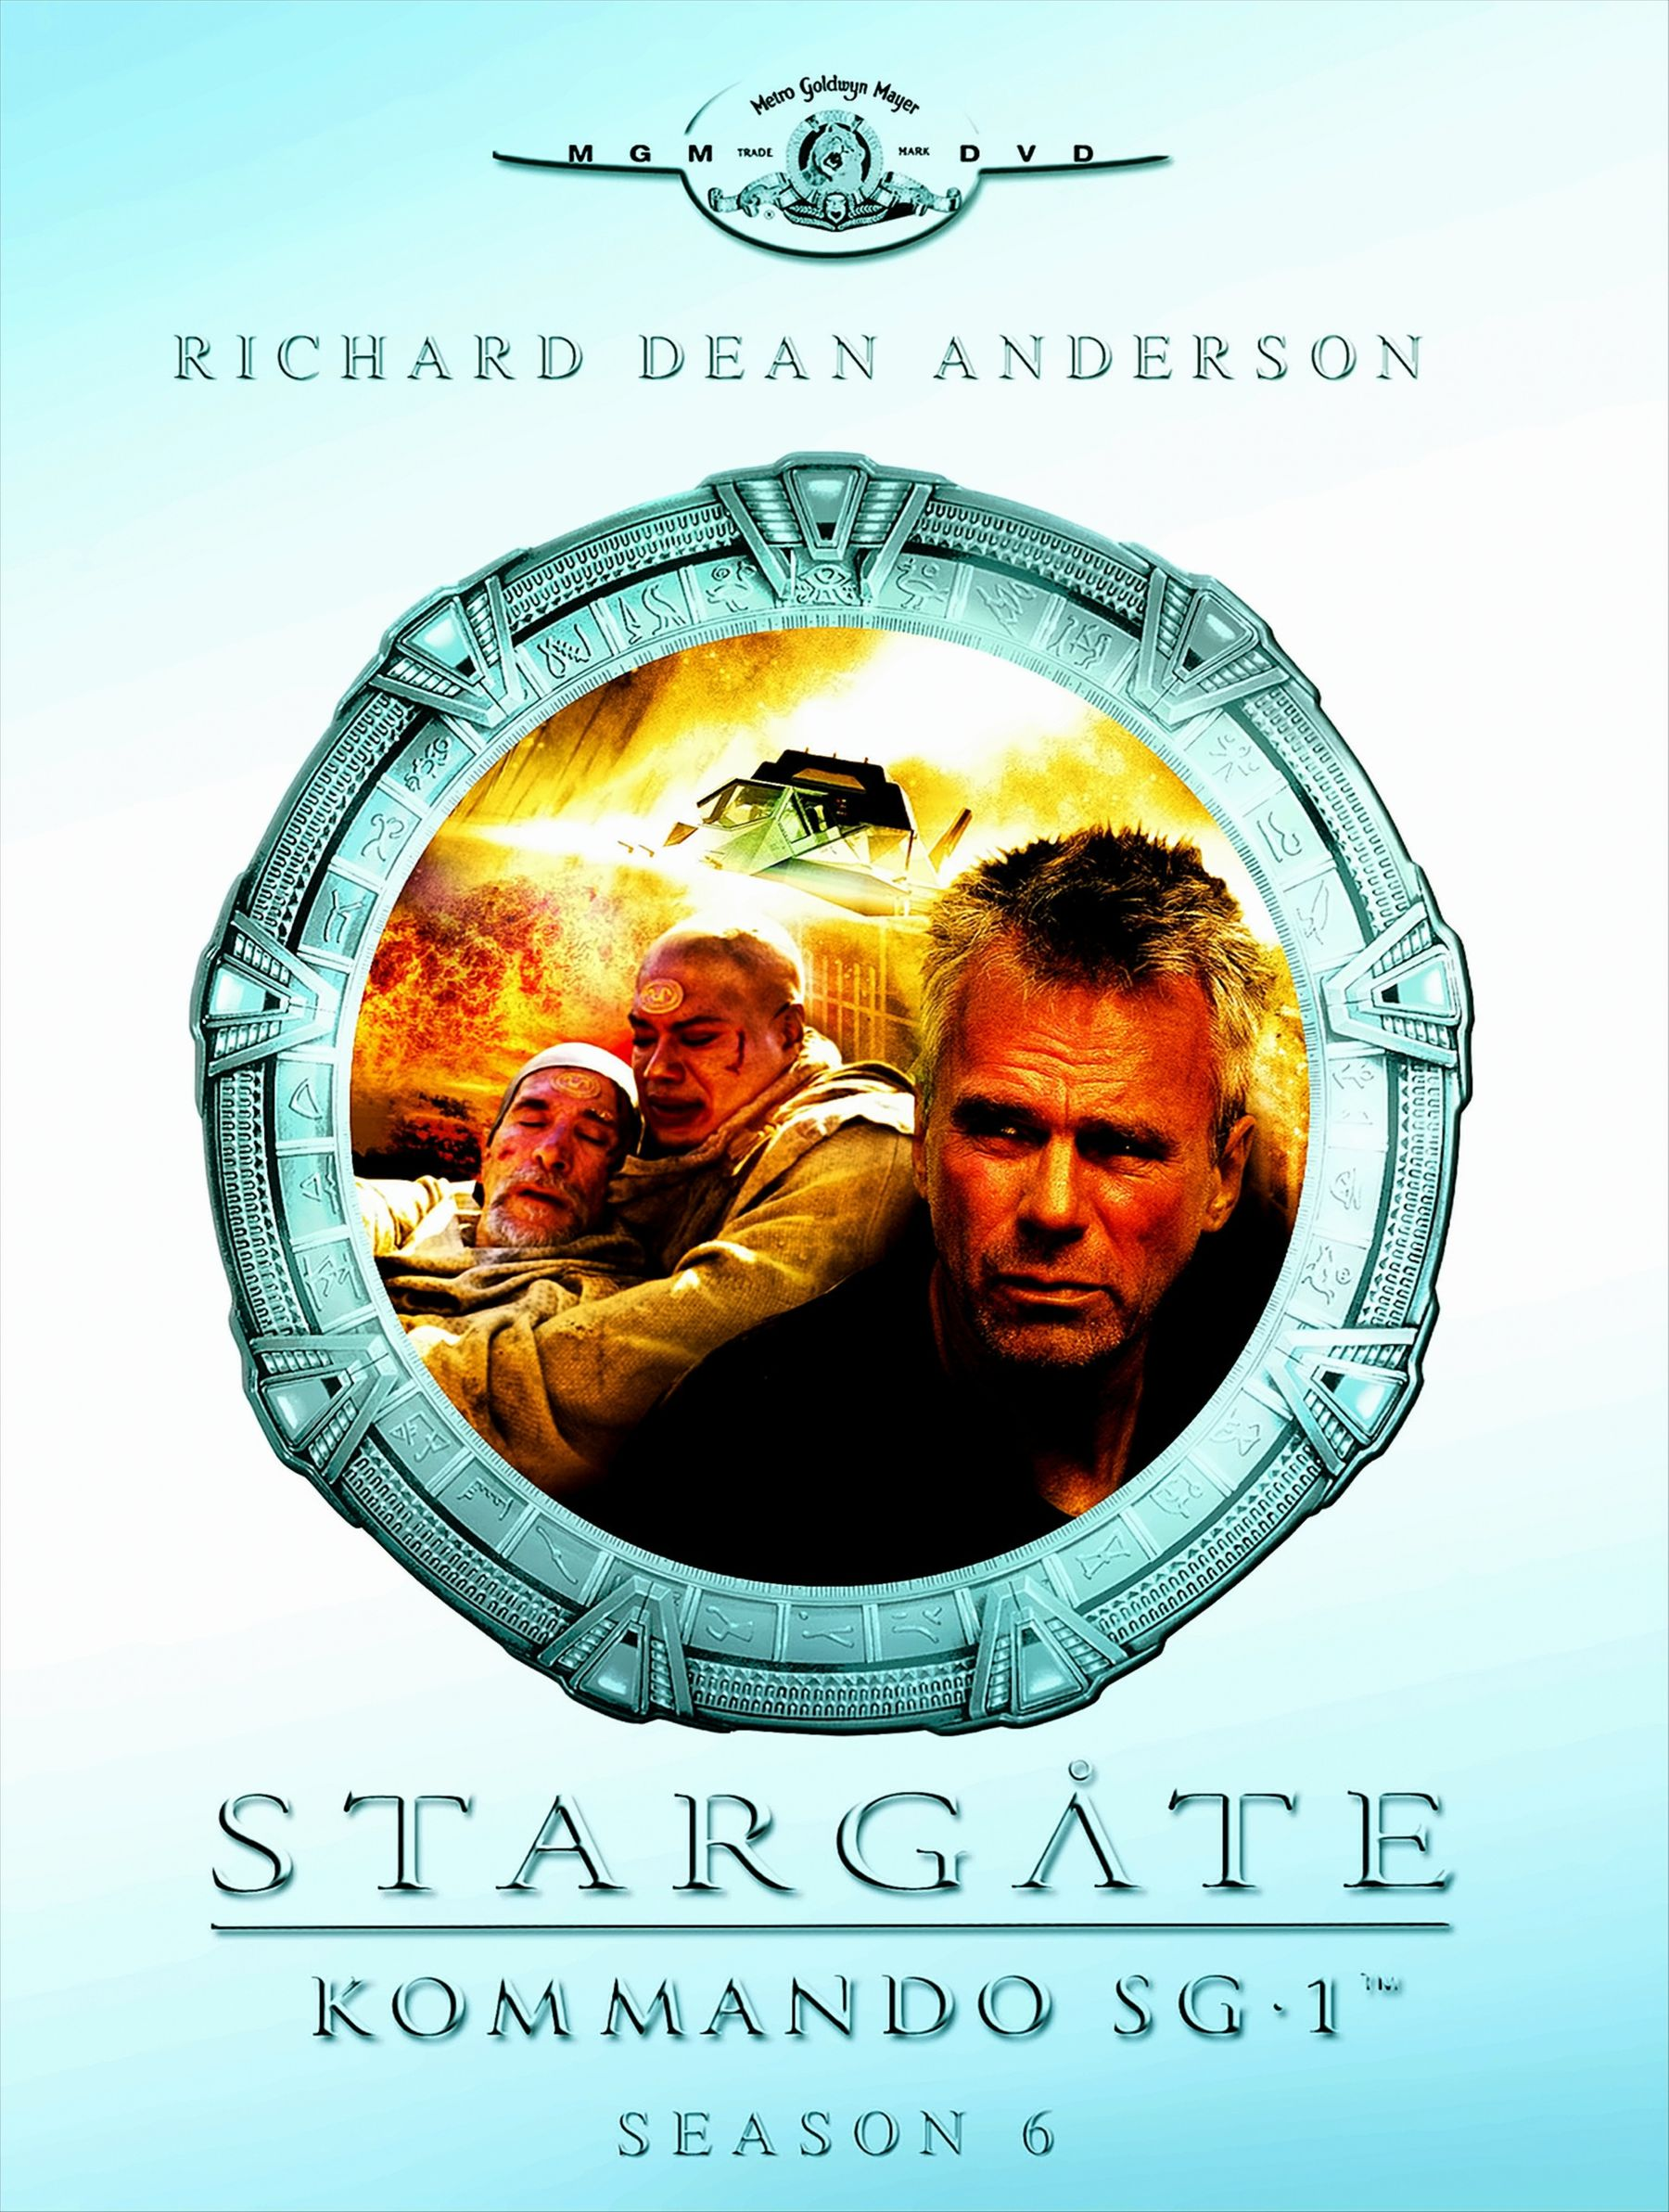 Season Kommando DVD SG-1 06 DVDs) Stargate - (6